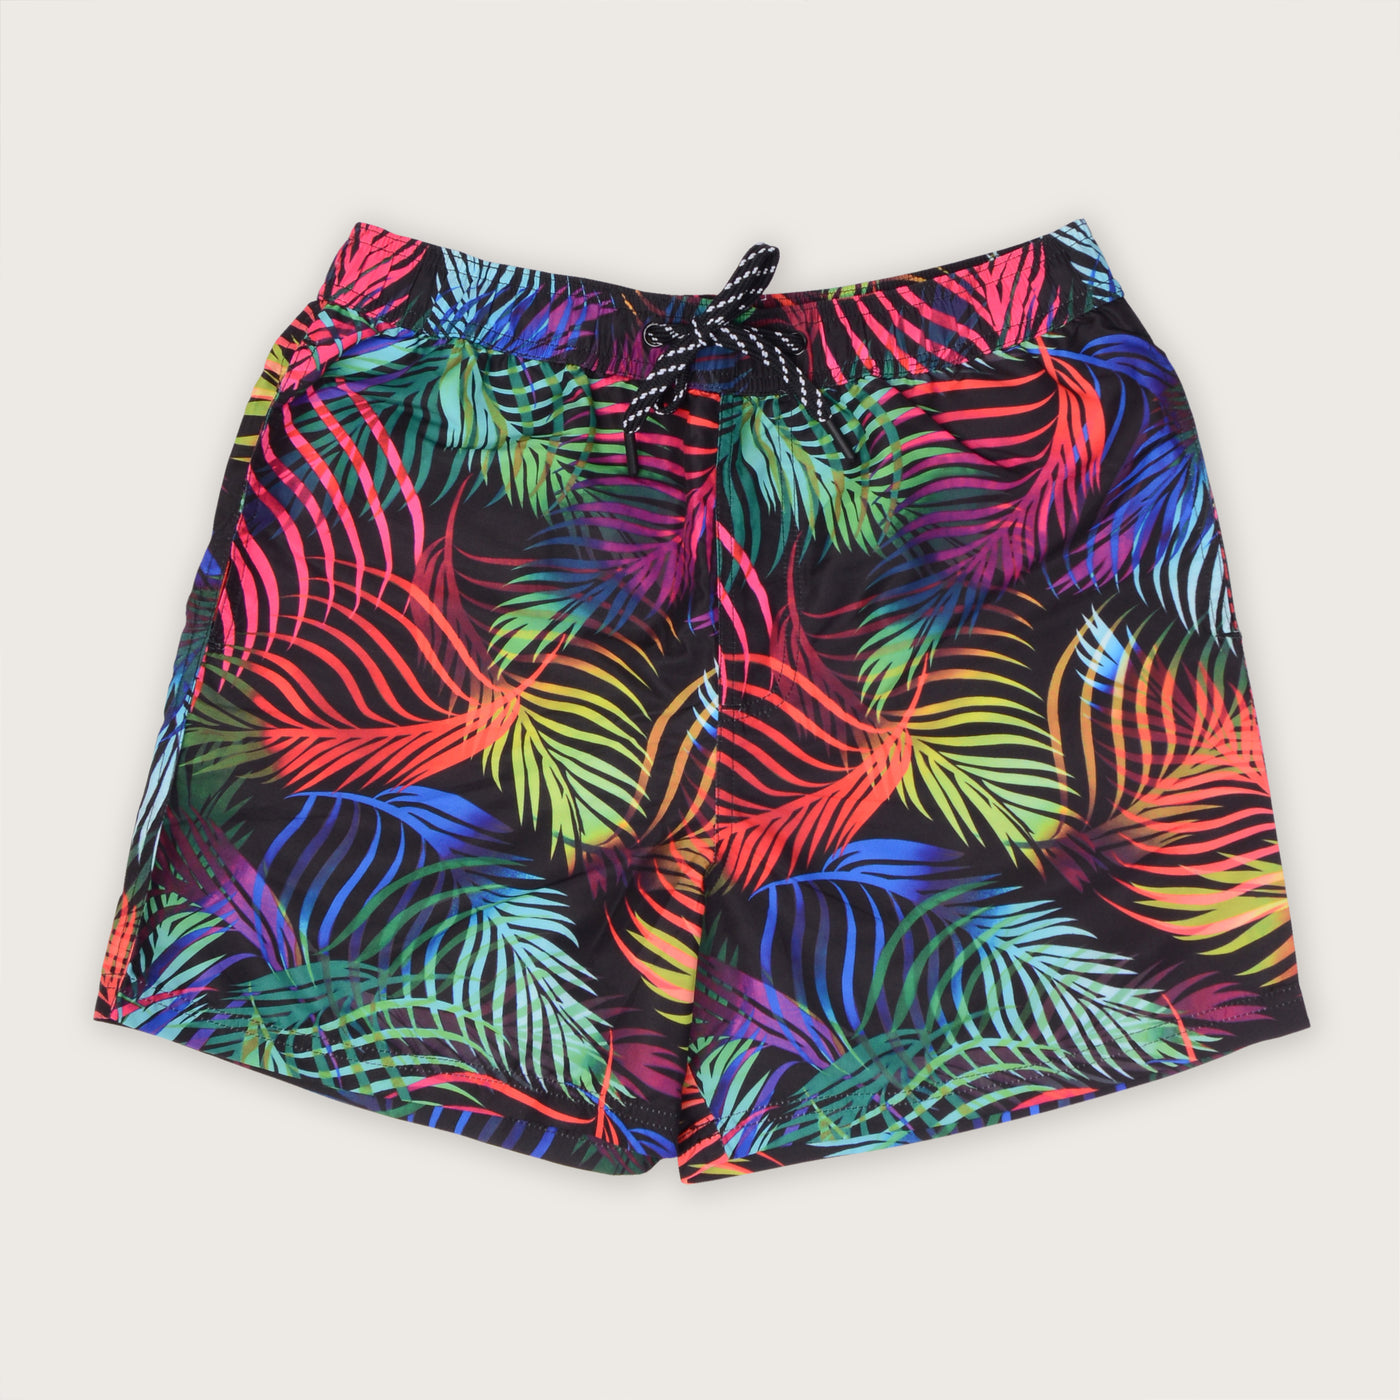 Buy now glow in dark swim shorts